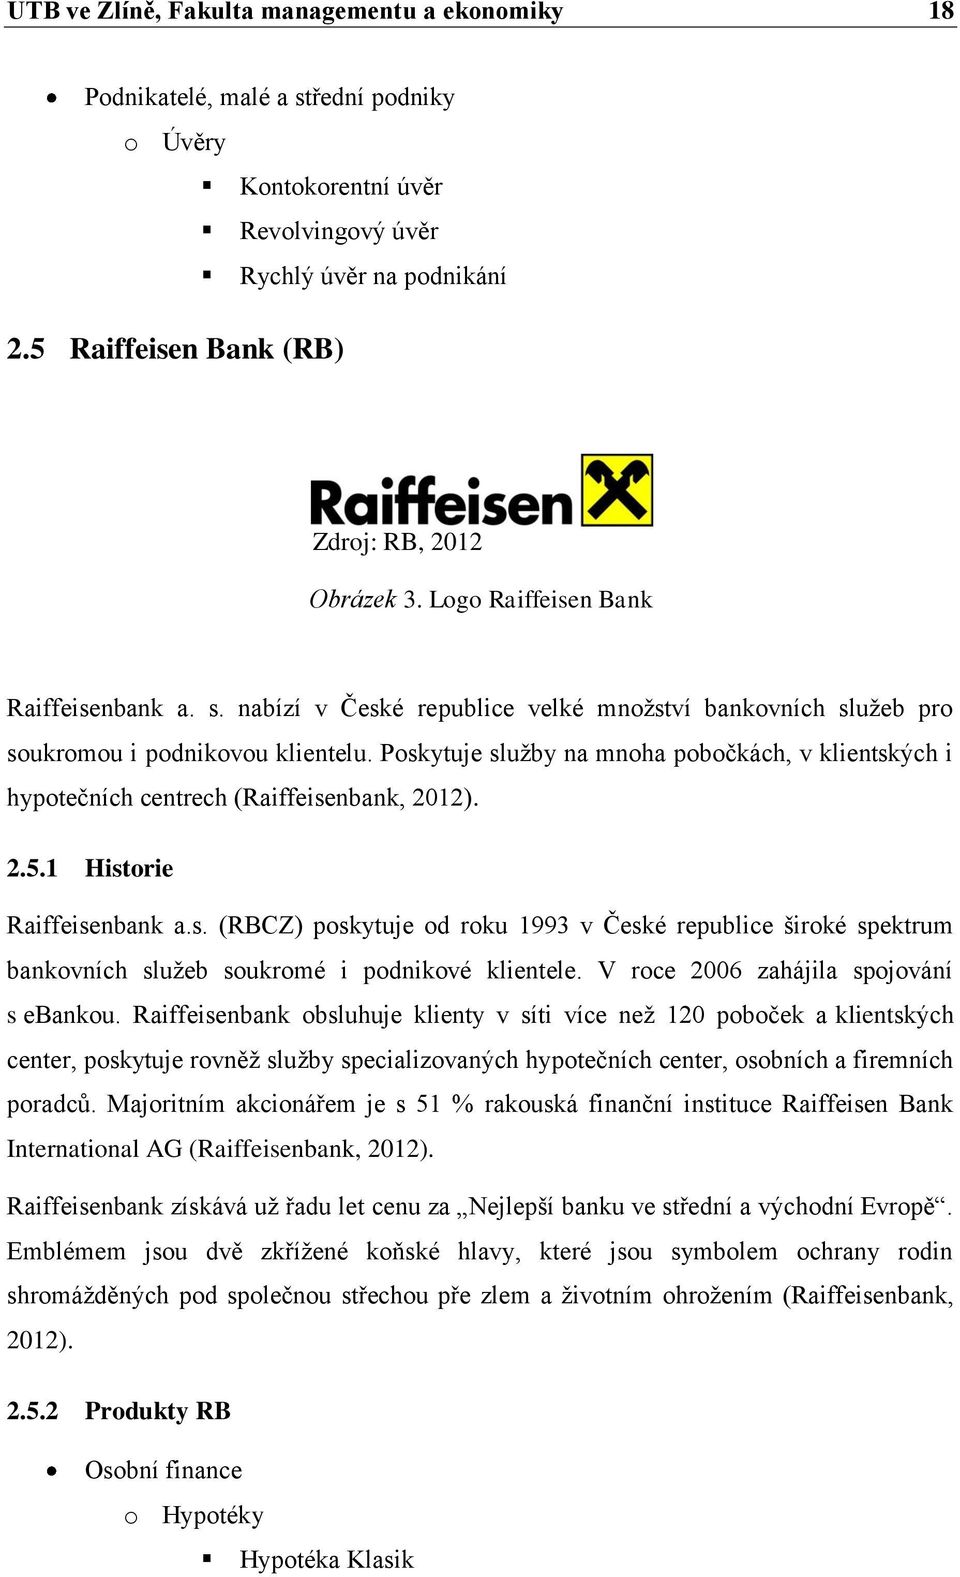 Poskytuje služby na mnoha pobočkách, v klientských i hypotečních centrech (Raiffeisenbank, 2012). 2.5.1 Historie Raiffeisenbank a.s. (RBCZ) poskytuje od roku 1993 v České republice široké spektrum bankovních služeb soukromé i podnikové klientele.